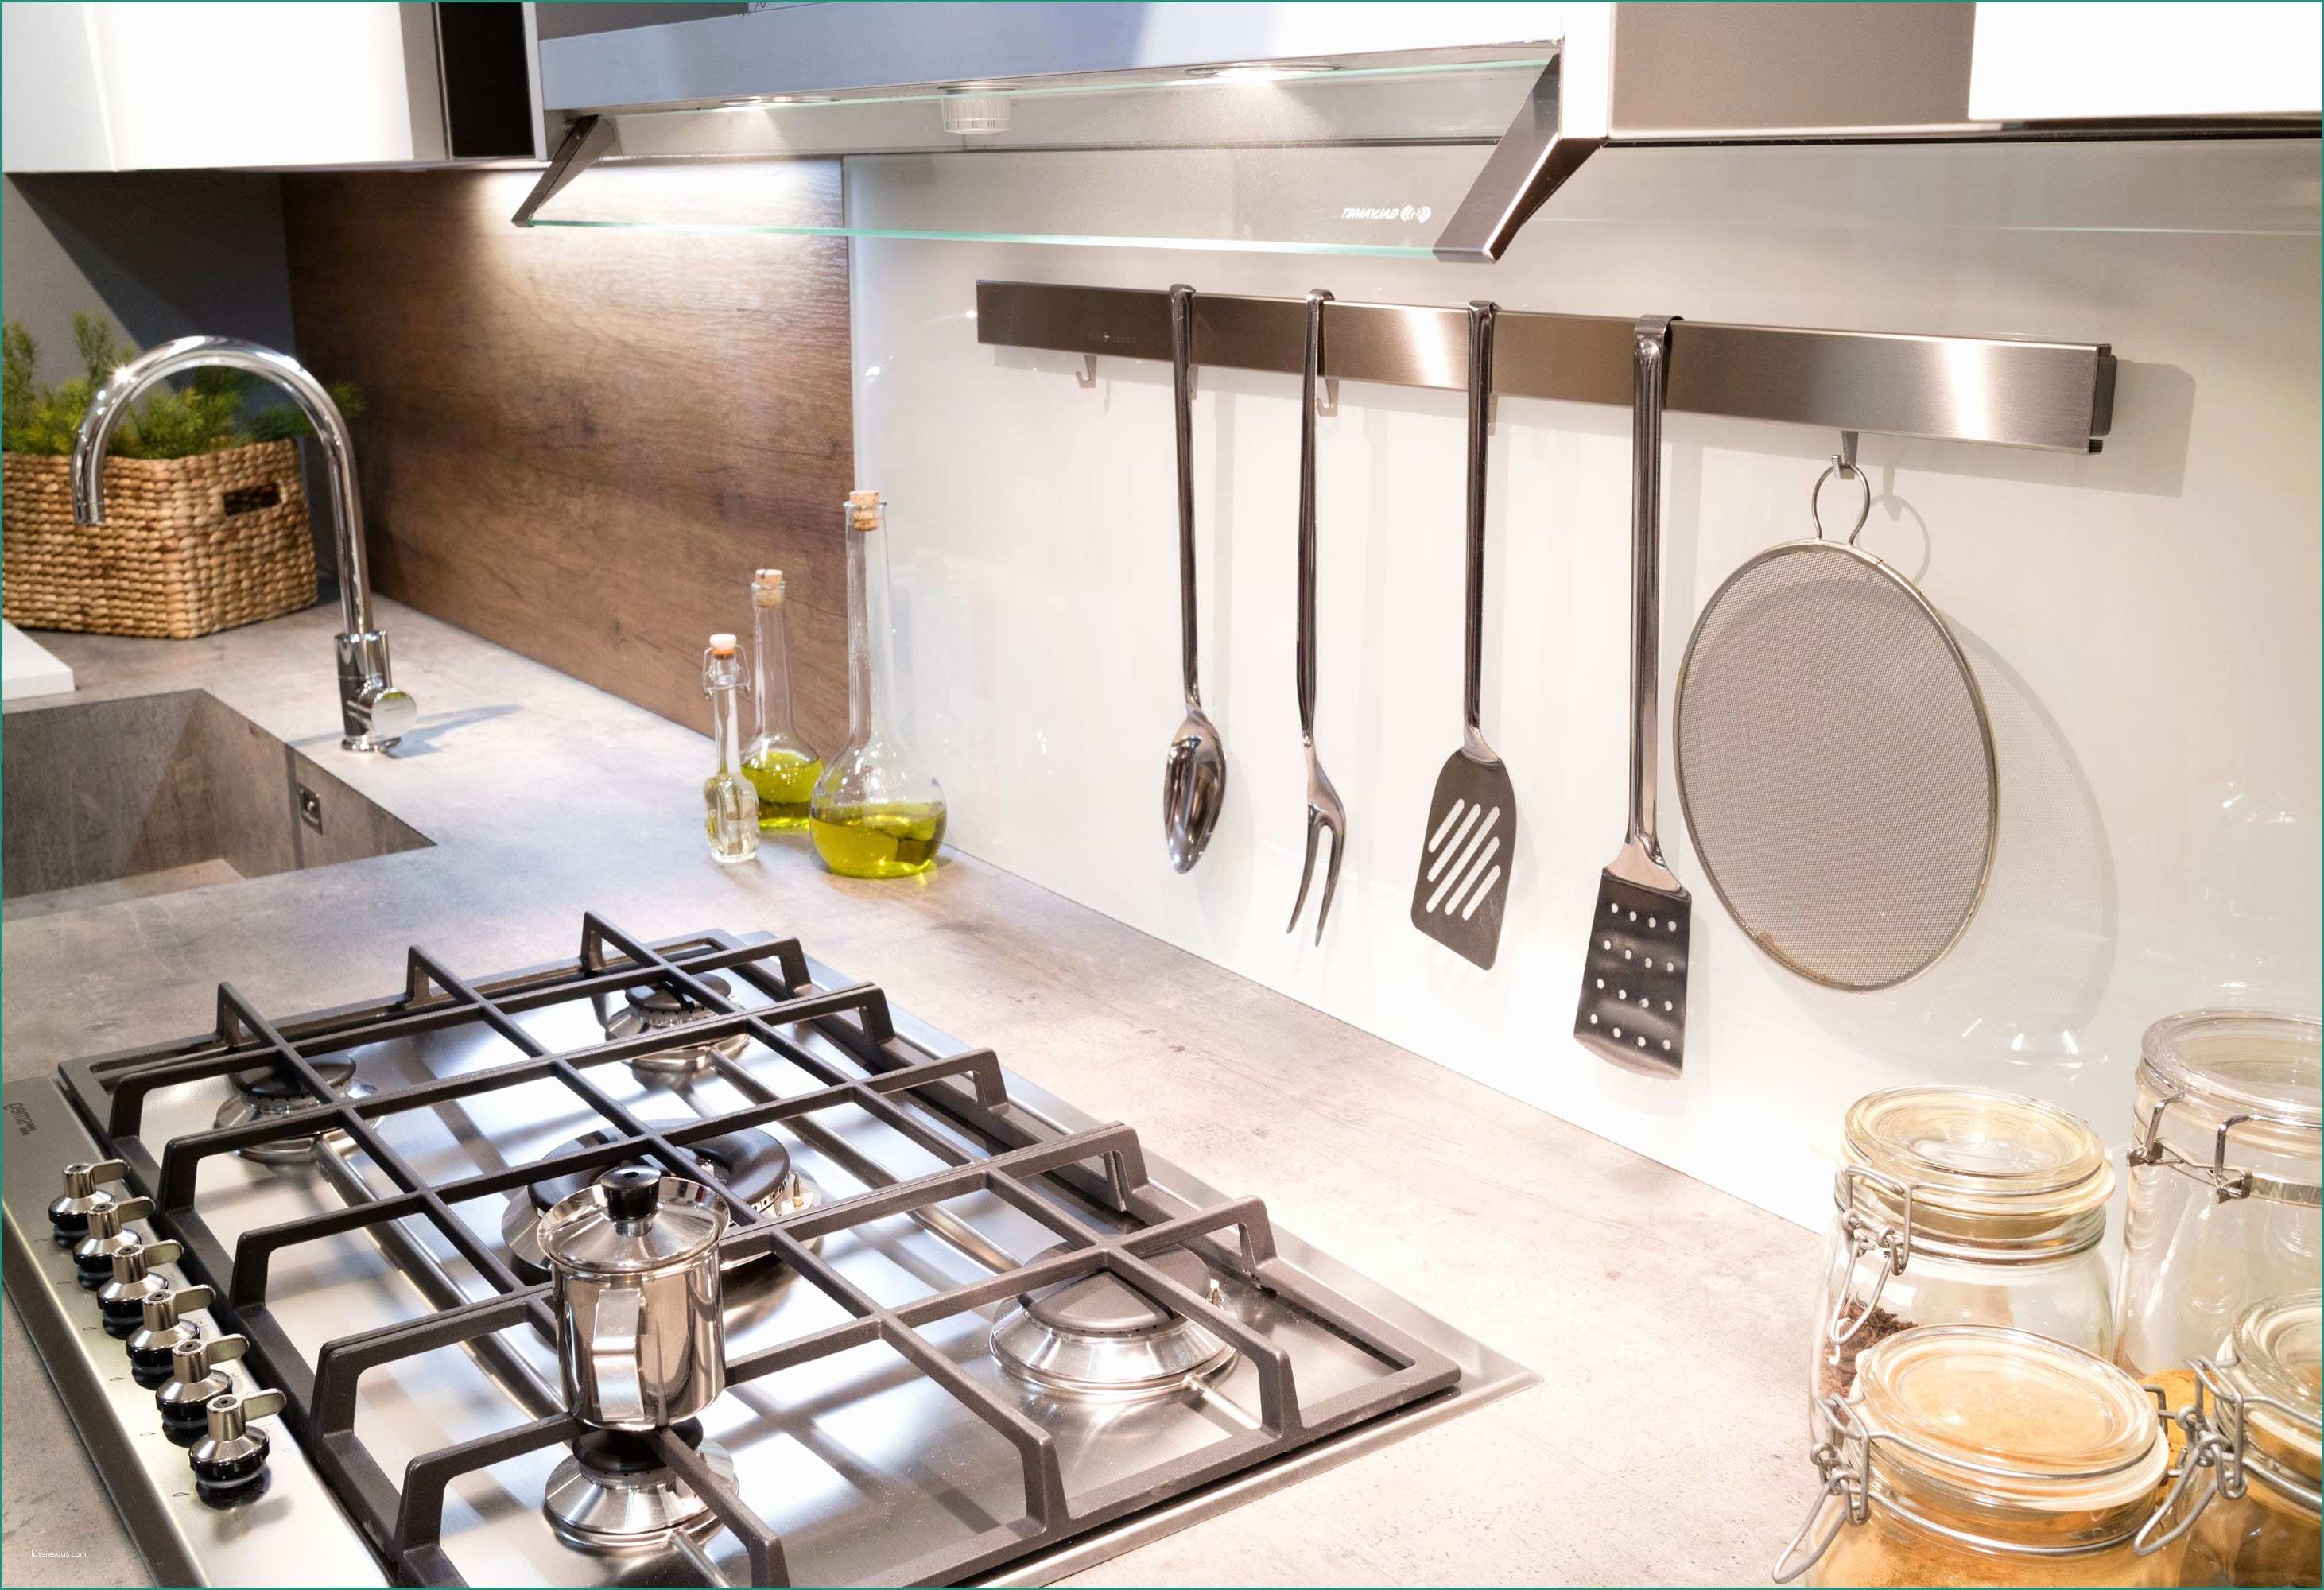 Arredamento Cucina Moderna E 25 Impresionante Ikea Accessori Cucina Fotos